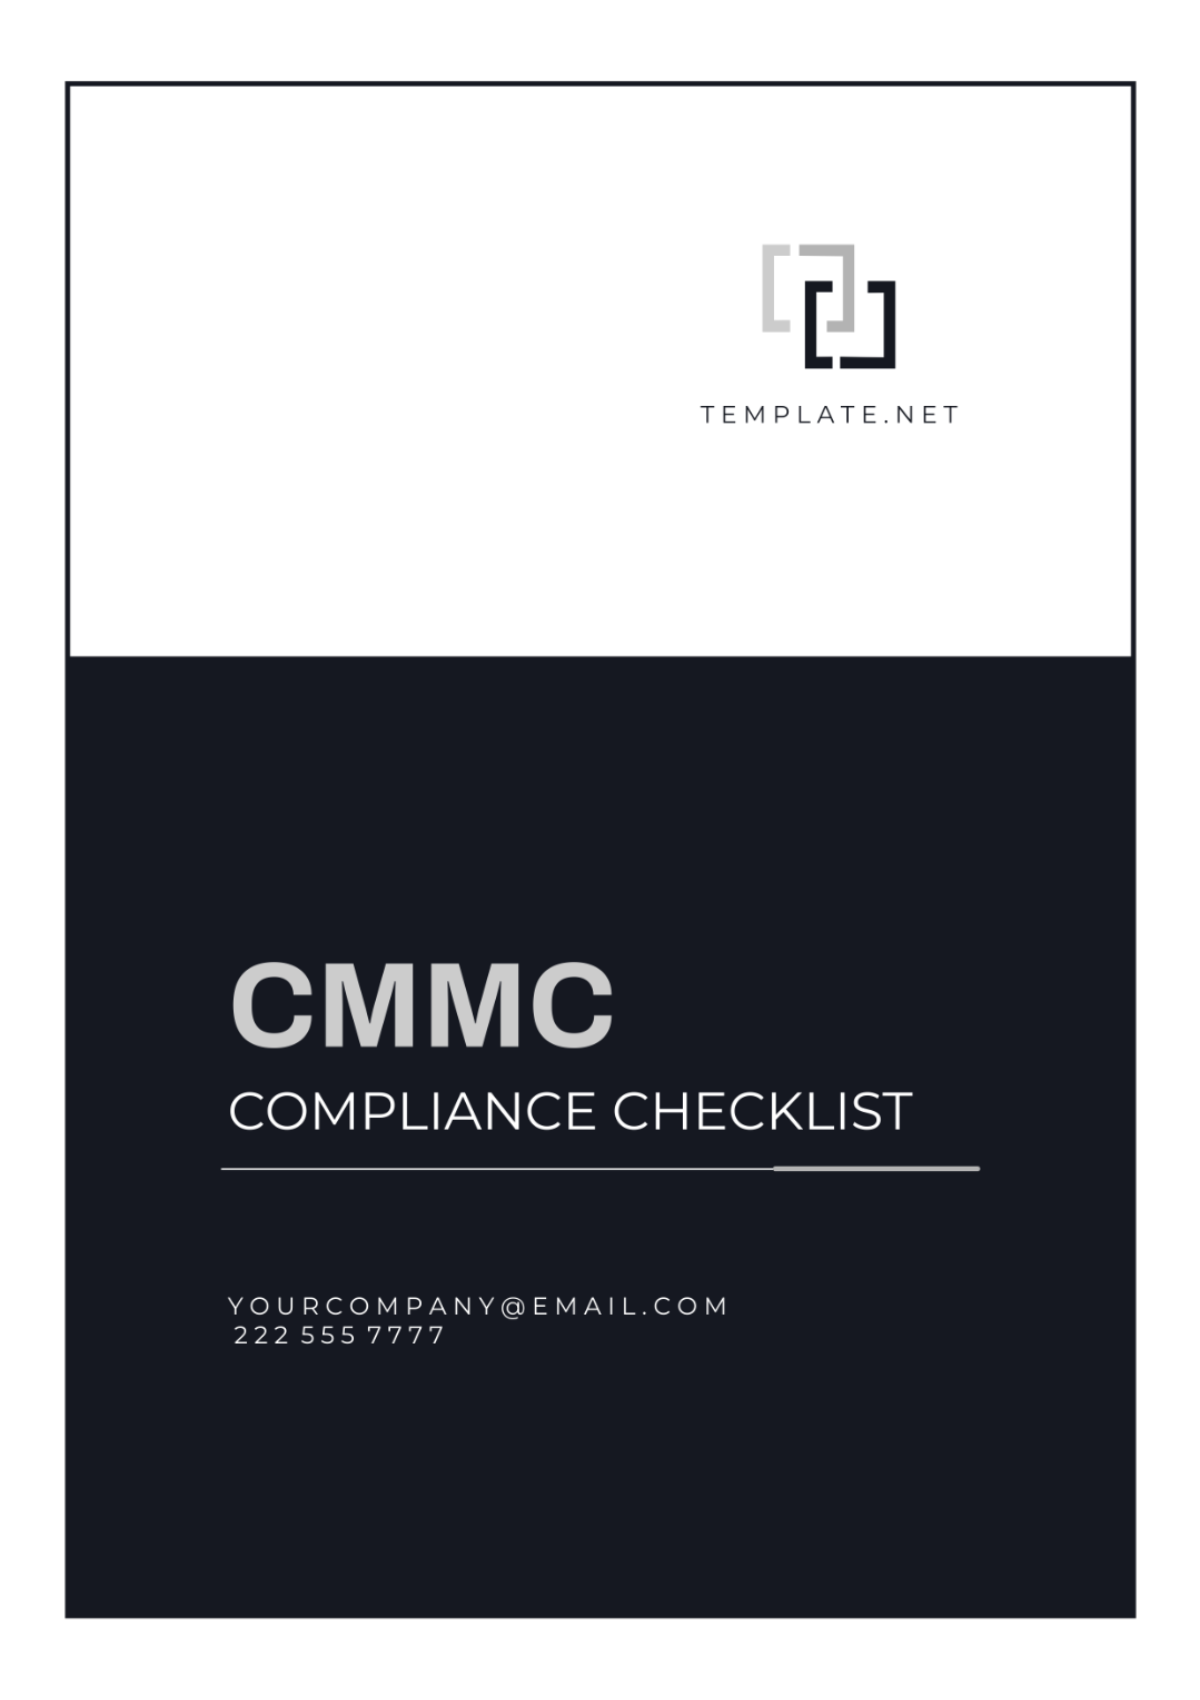 CMMC Compliance Checklist Template